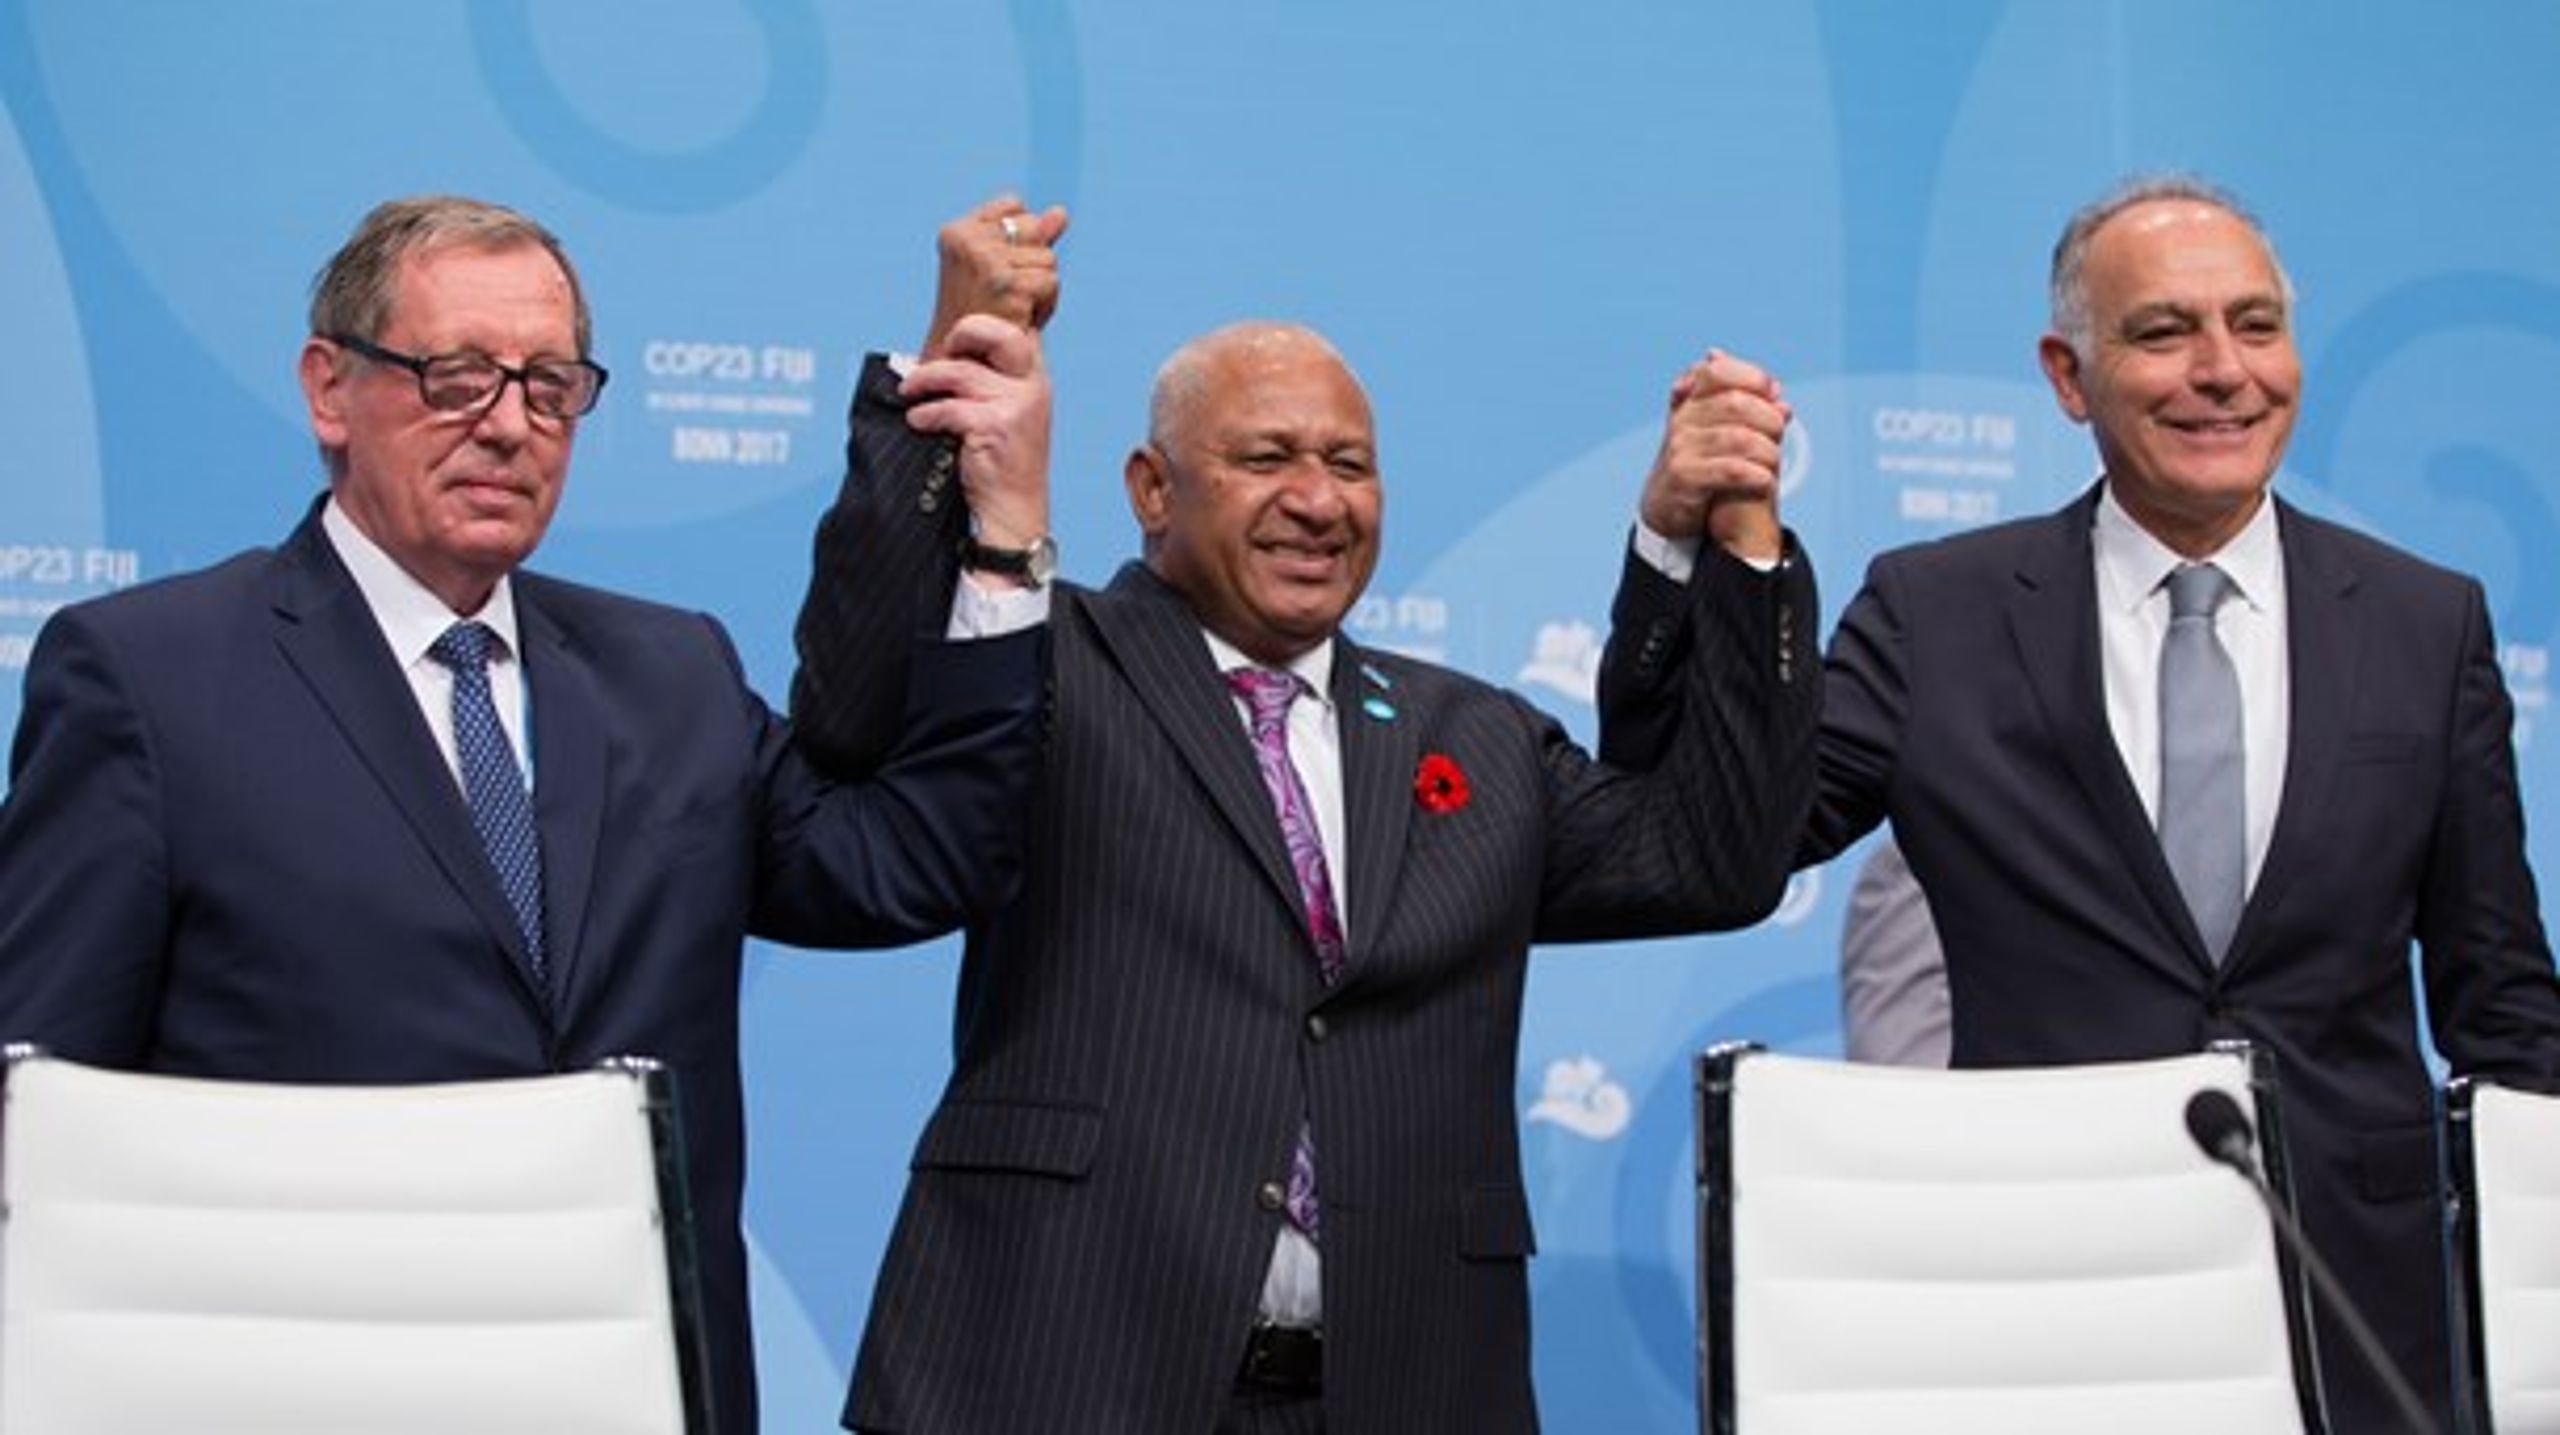 Polens Jan Szyszkos roll som ledare ifrågasätts inför nästa klimatmöte, som de ska leda tillsammans med&nbsp;Fijis Frank Bainimarama och Marockos Salaheddine Mezouar.